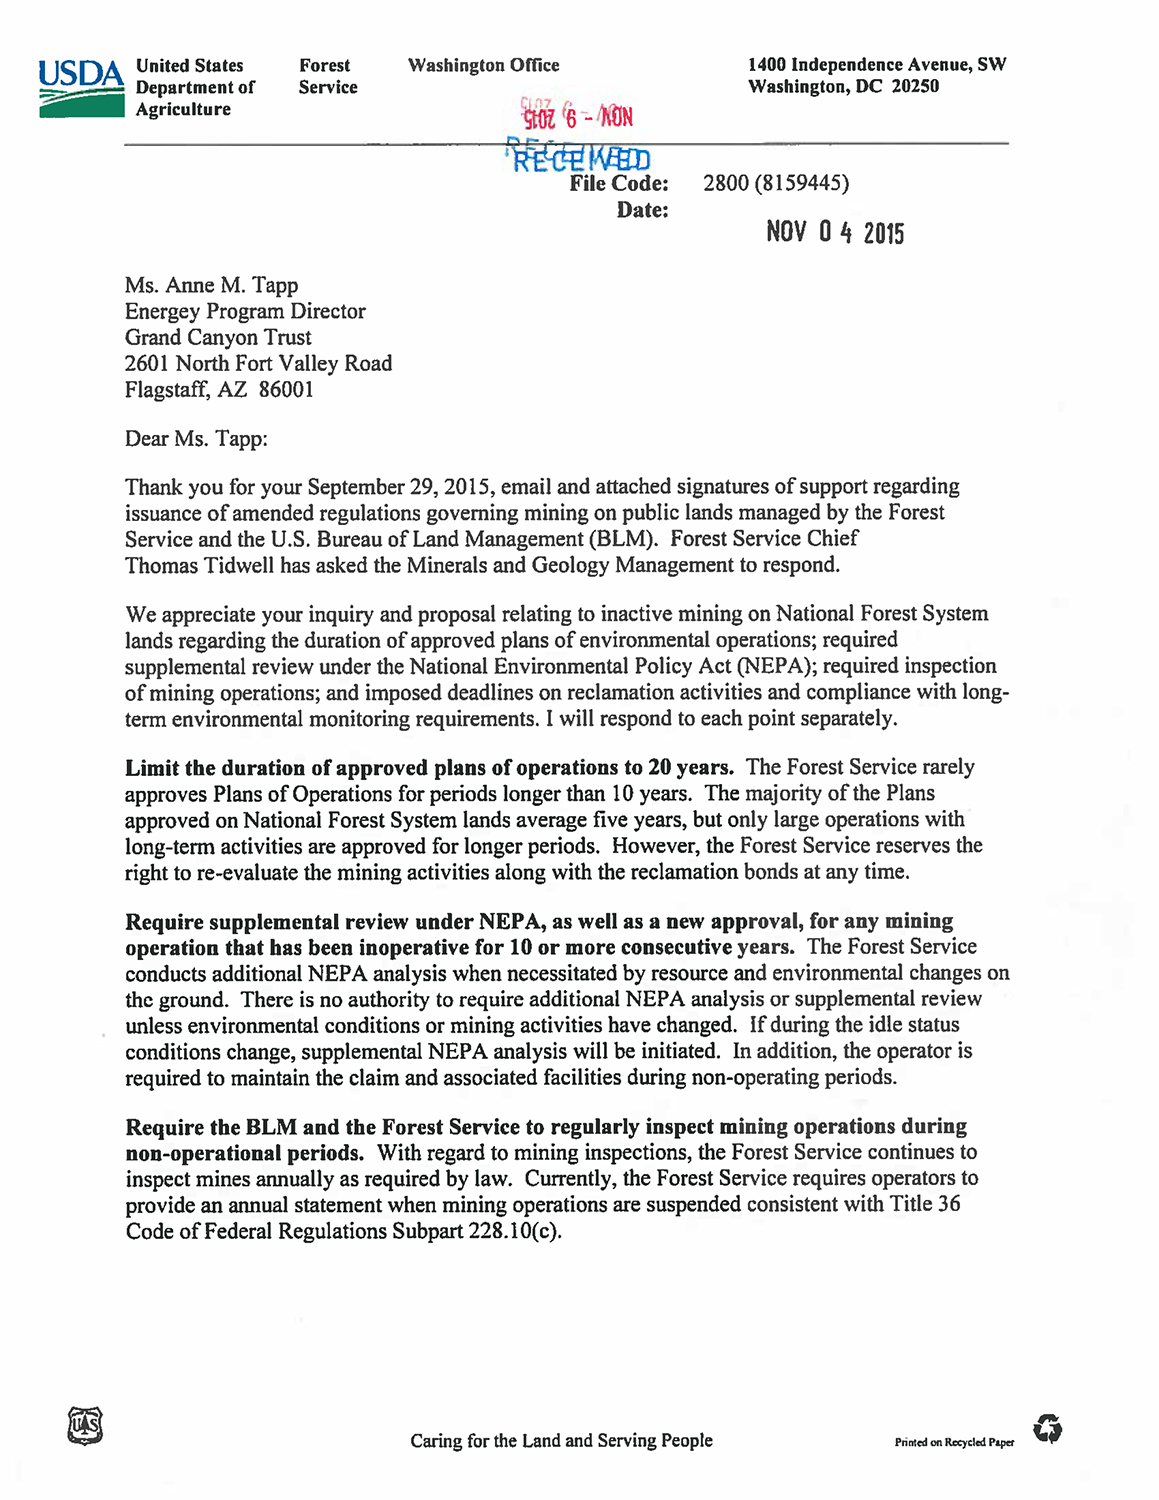 USFS denial letter